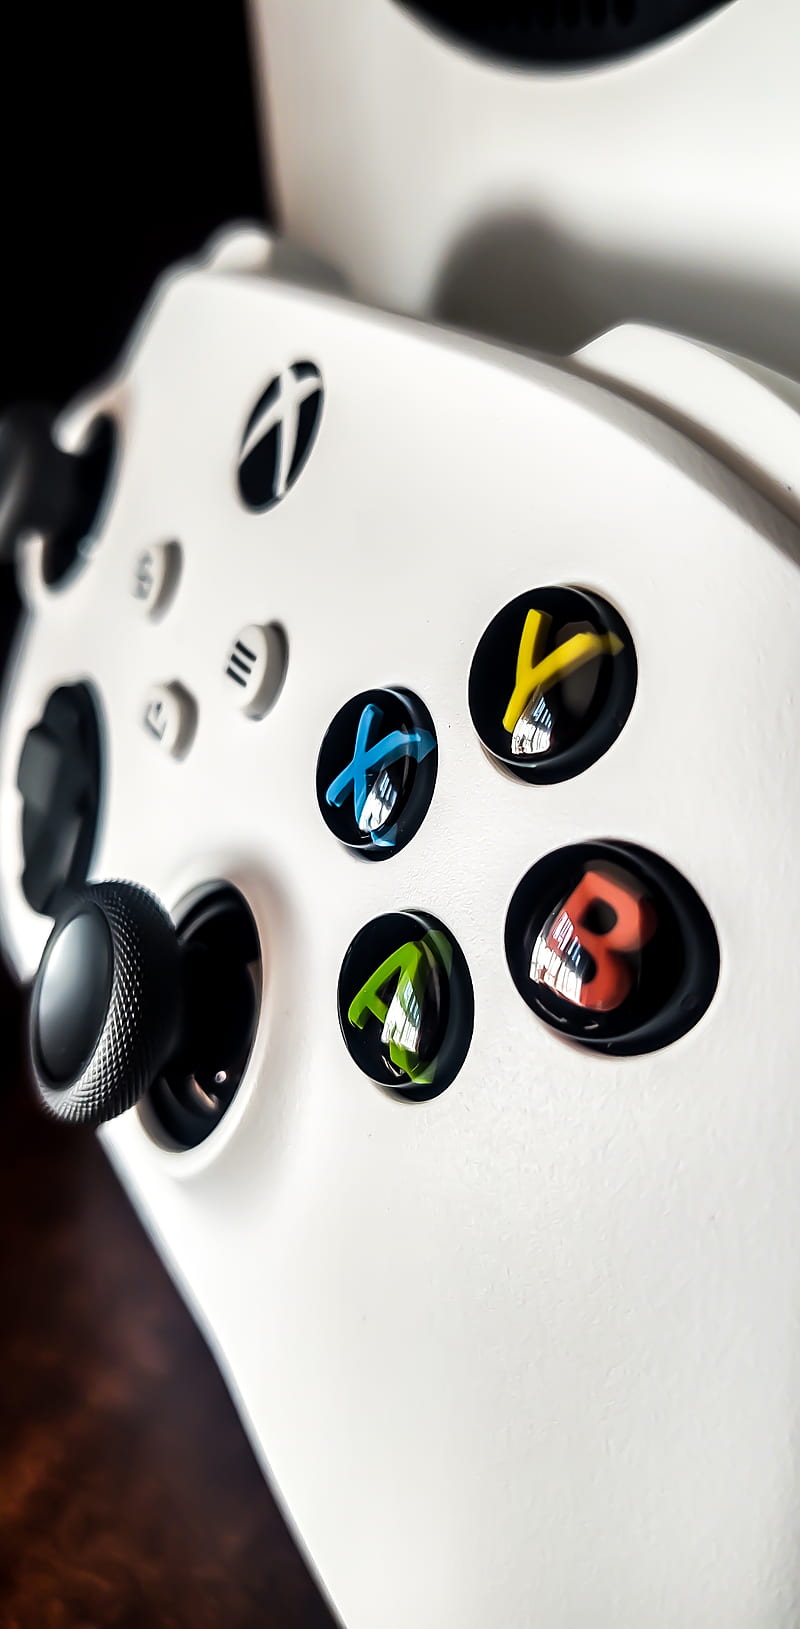 Tay cầm Xbox là một phụ kiện không thể thiếu đối với những tín đồ của trò chơi và gaming. Hãy xem ảnh về các dòng sản phẩm Series S và Xbox controller để cùng đắm chìm trong thế giới game mê hoặc.